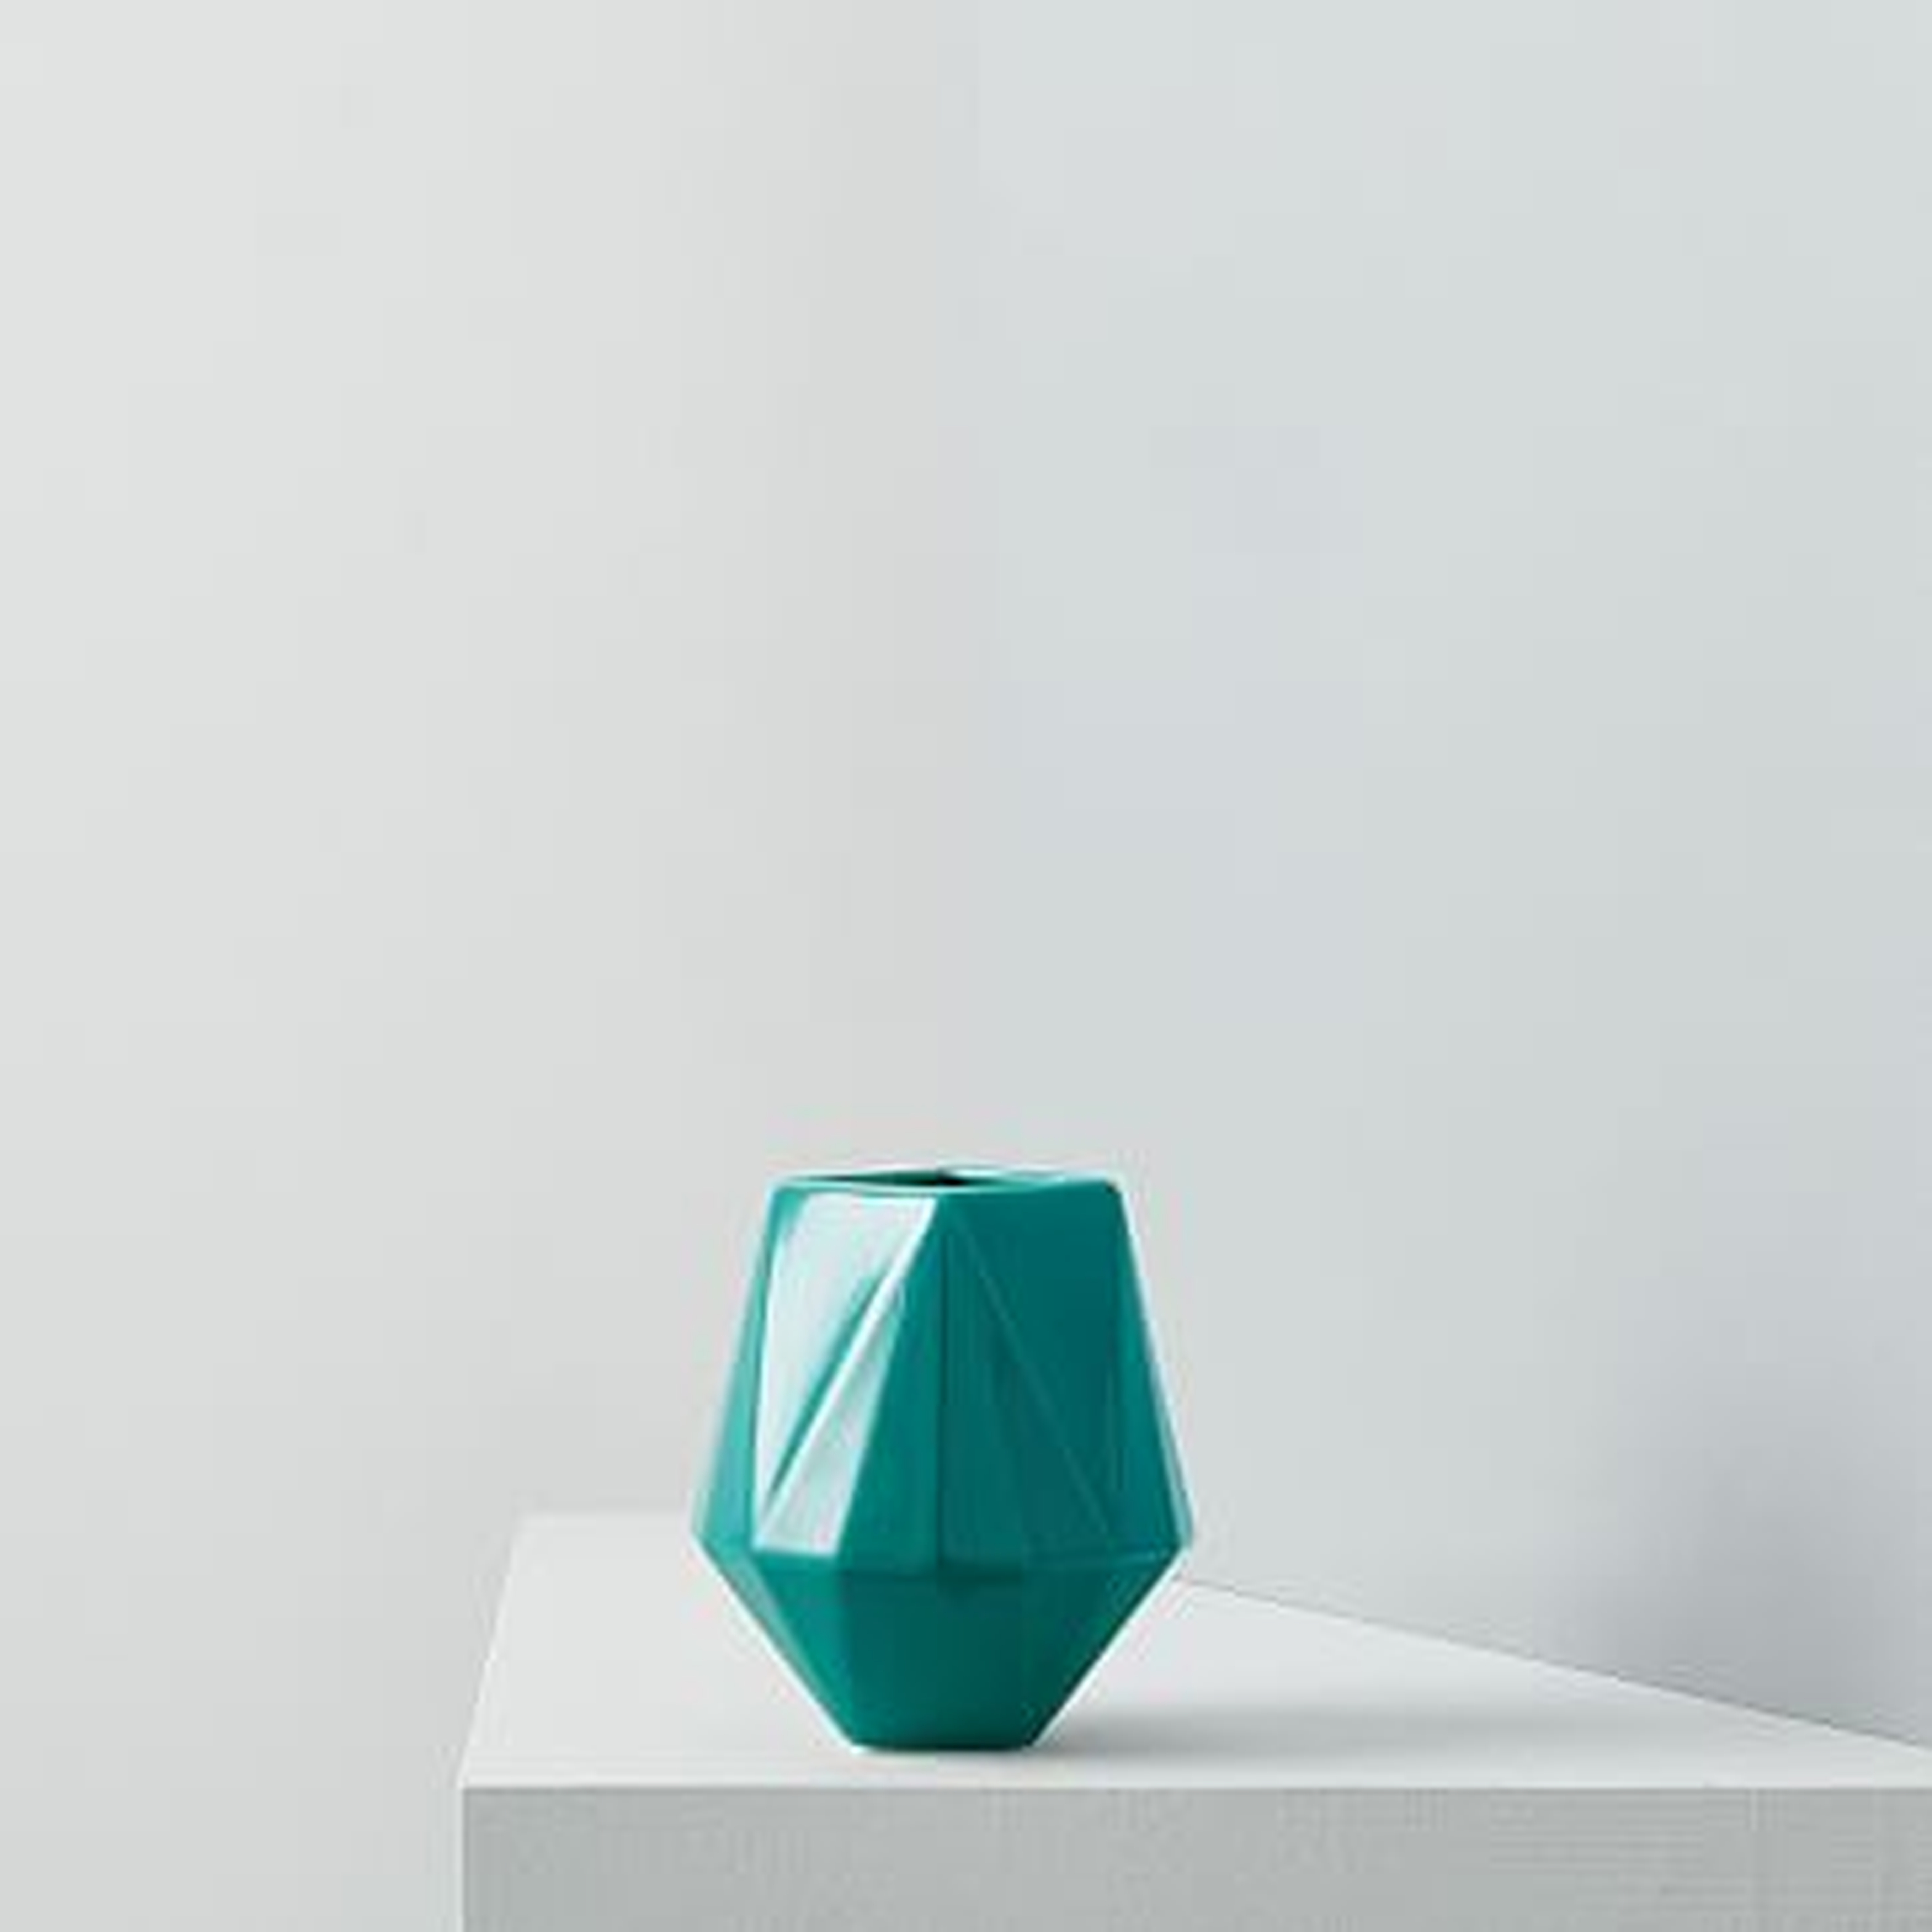 Faceted Porcelain Vase, 4.25", Blue Teal - West Elm